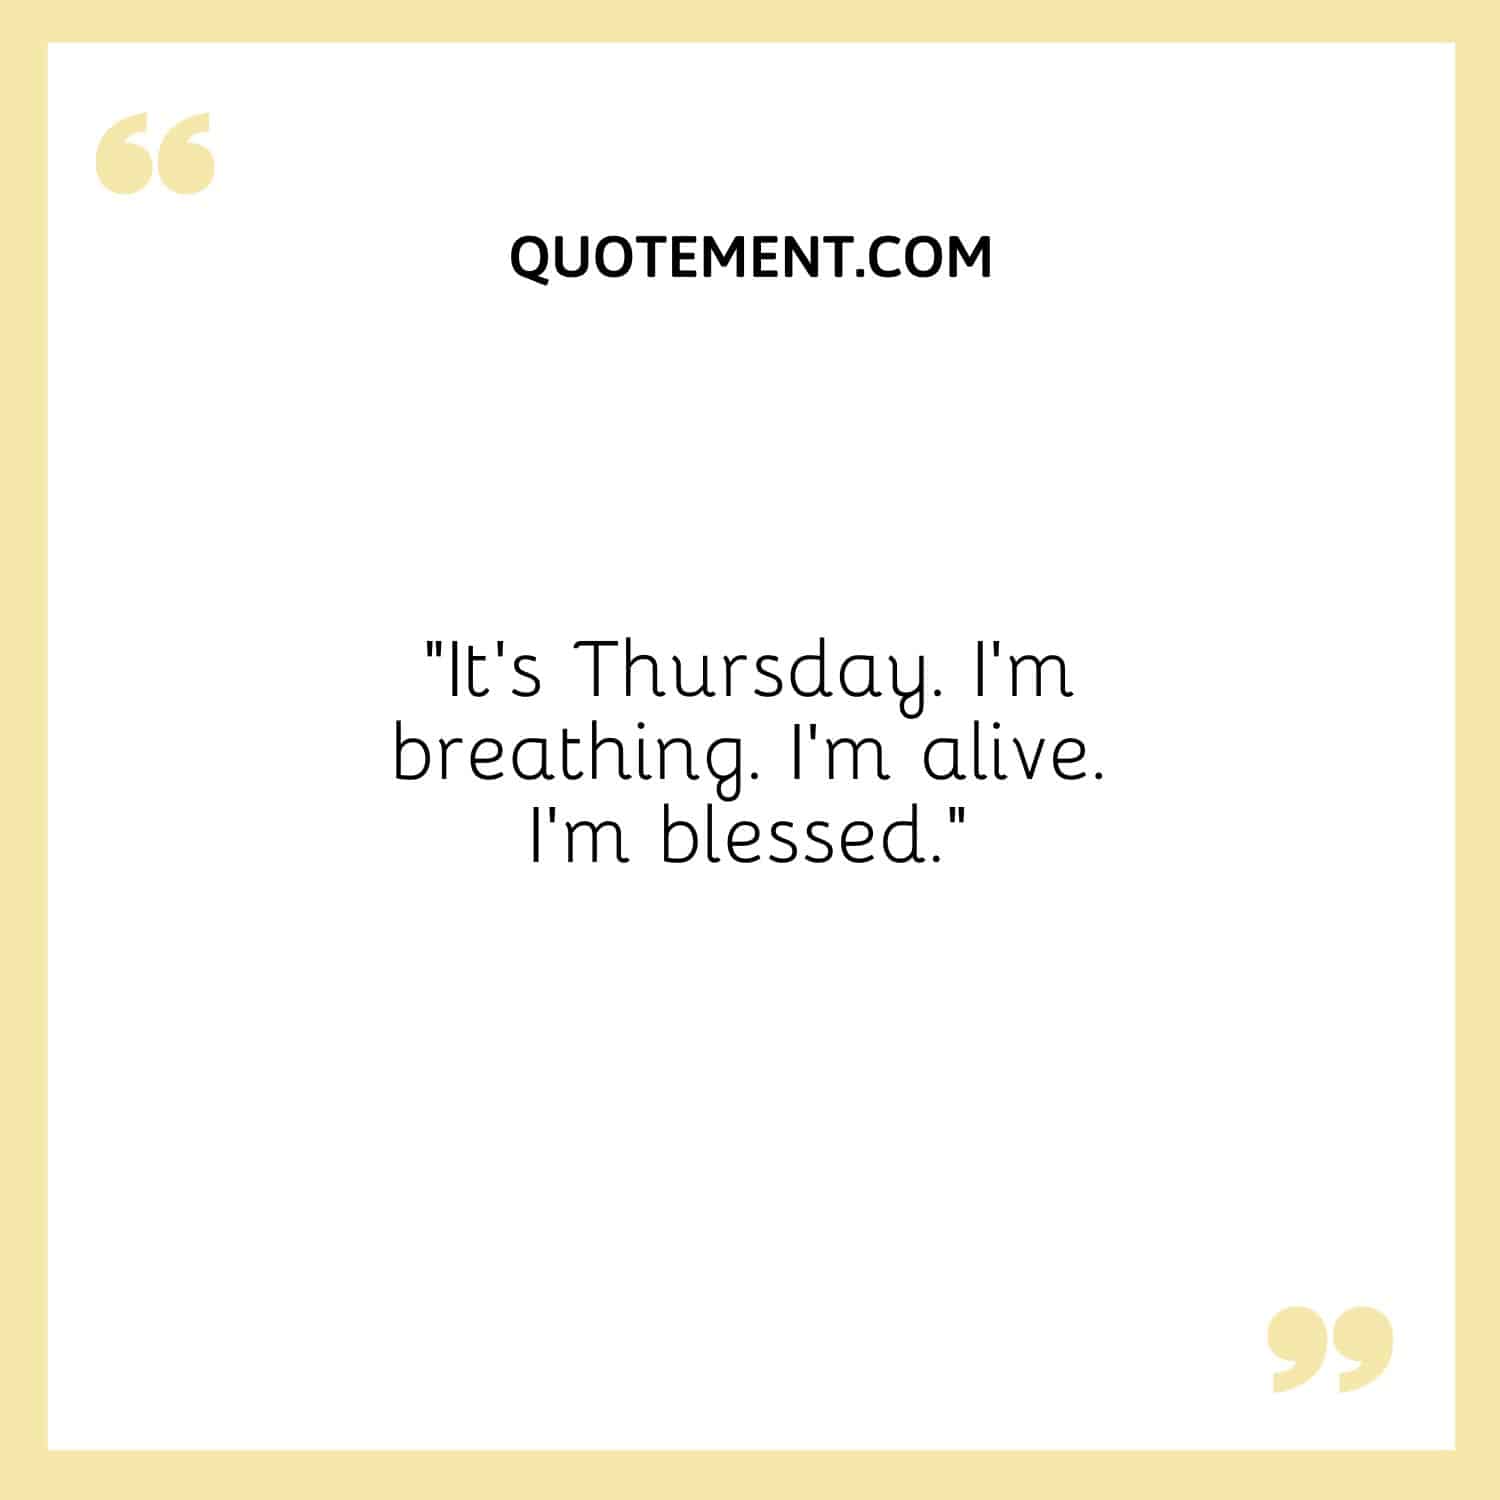 “It’s Thursday. I’m breathing. I’m alive. I’m blessed.”